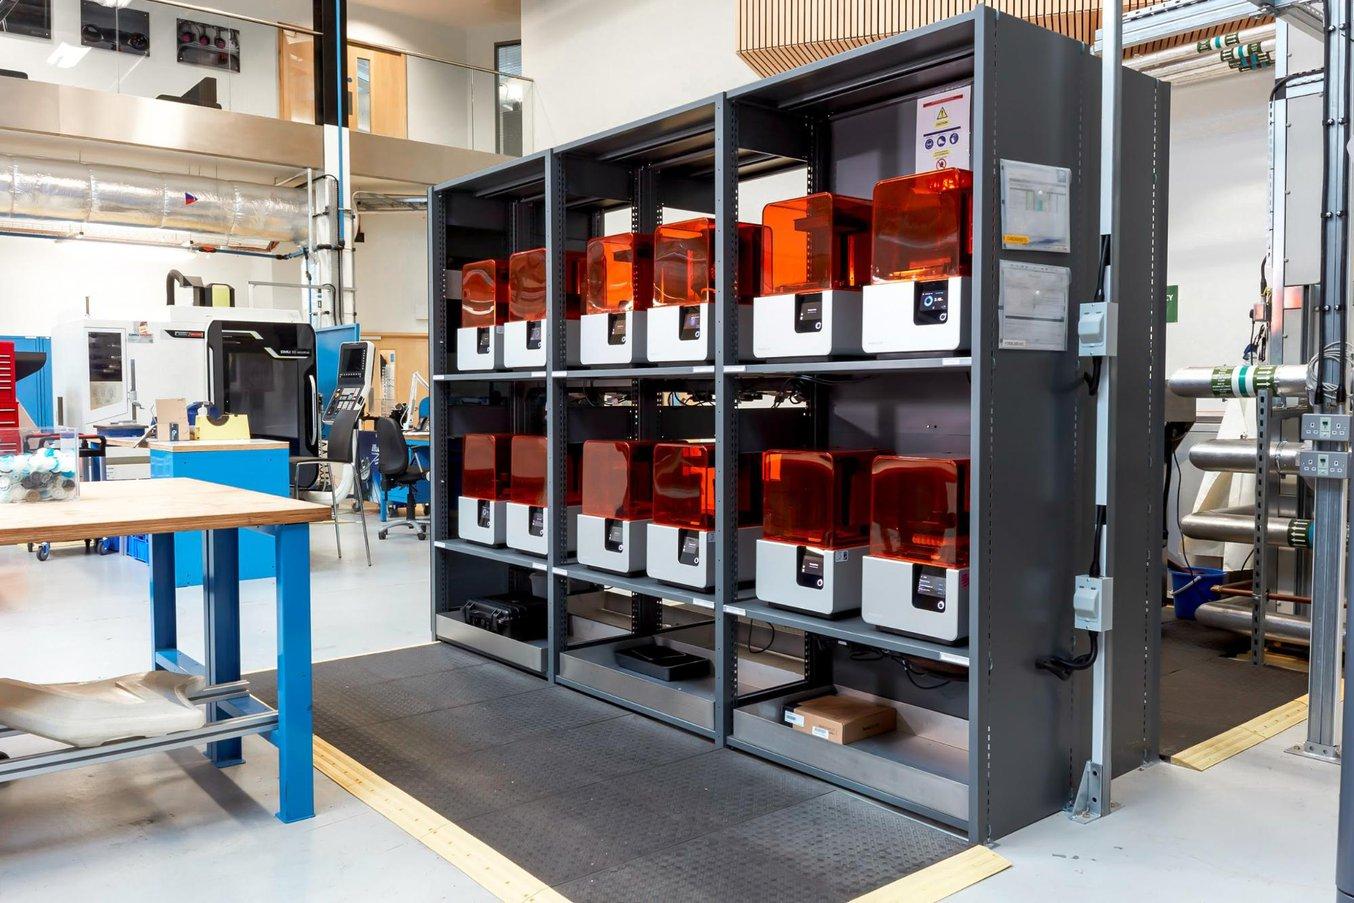 Cocking e il Design and Prototyping Group hanno in programma di replicare il modello della postazione di stampa 3D presso altre strutture dell'AMRC e di partner industriali.